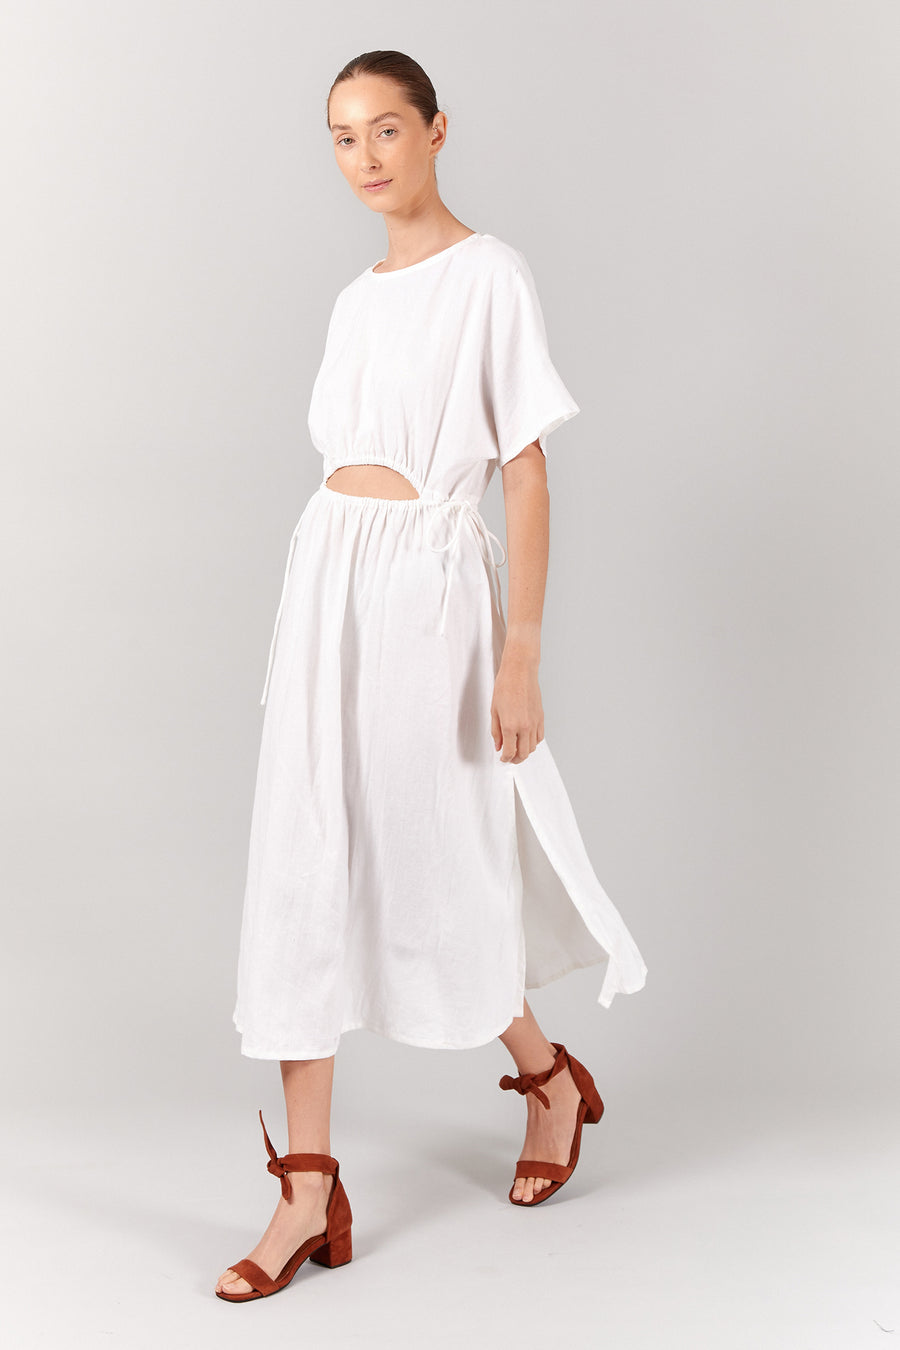 FRANKIE DRESS - WHITE